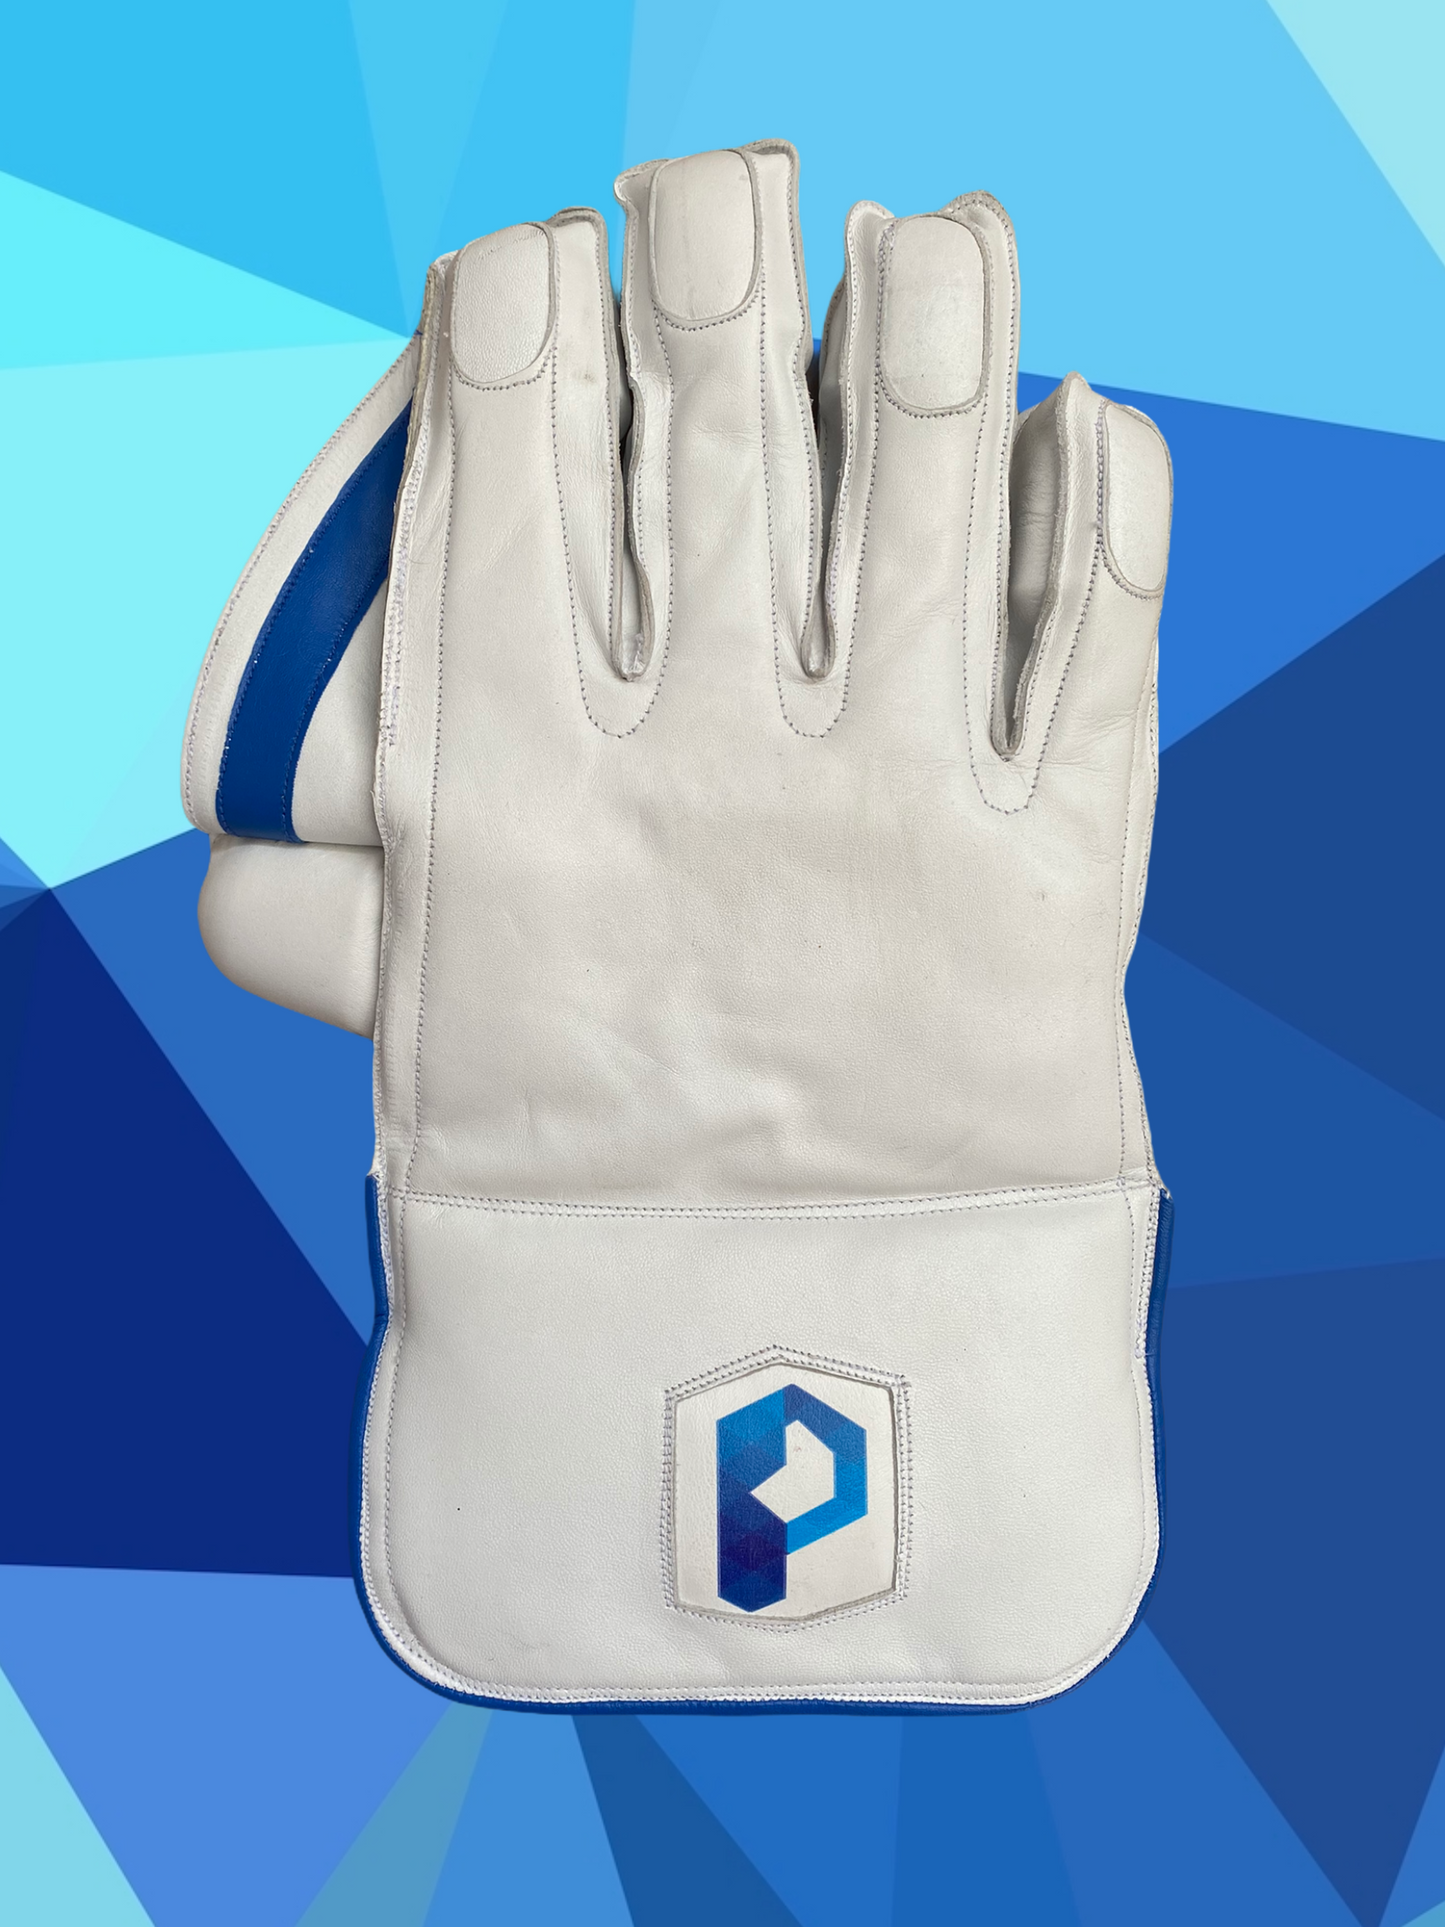 wicket keeper gloves